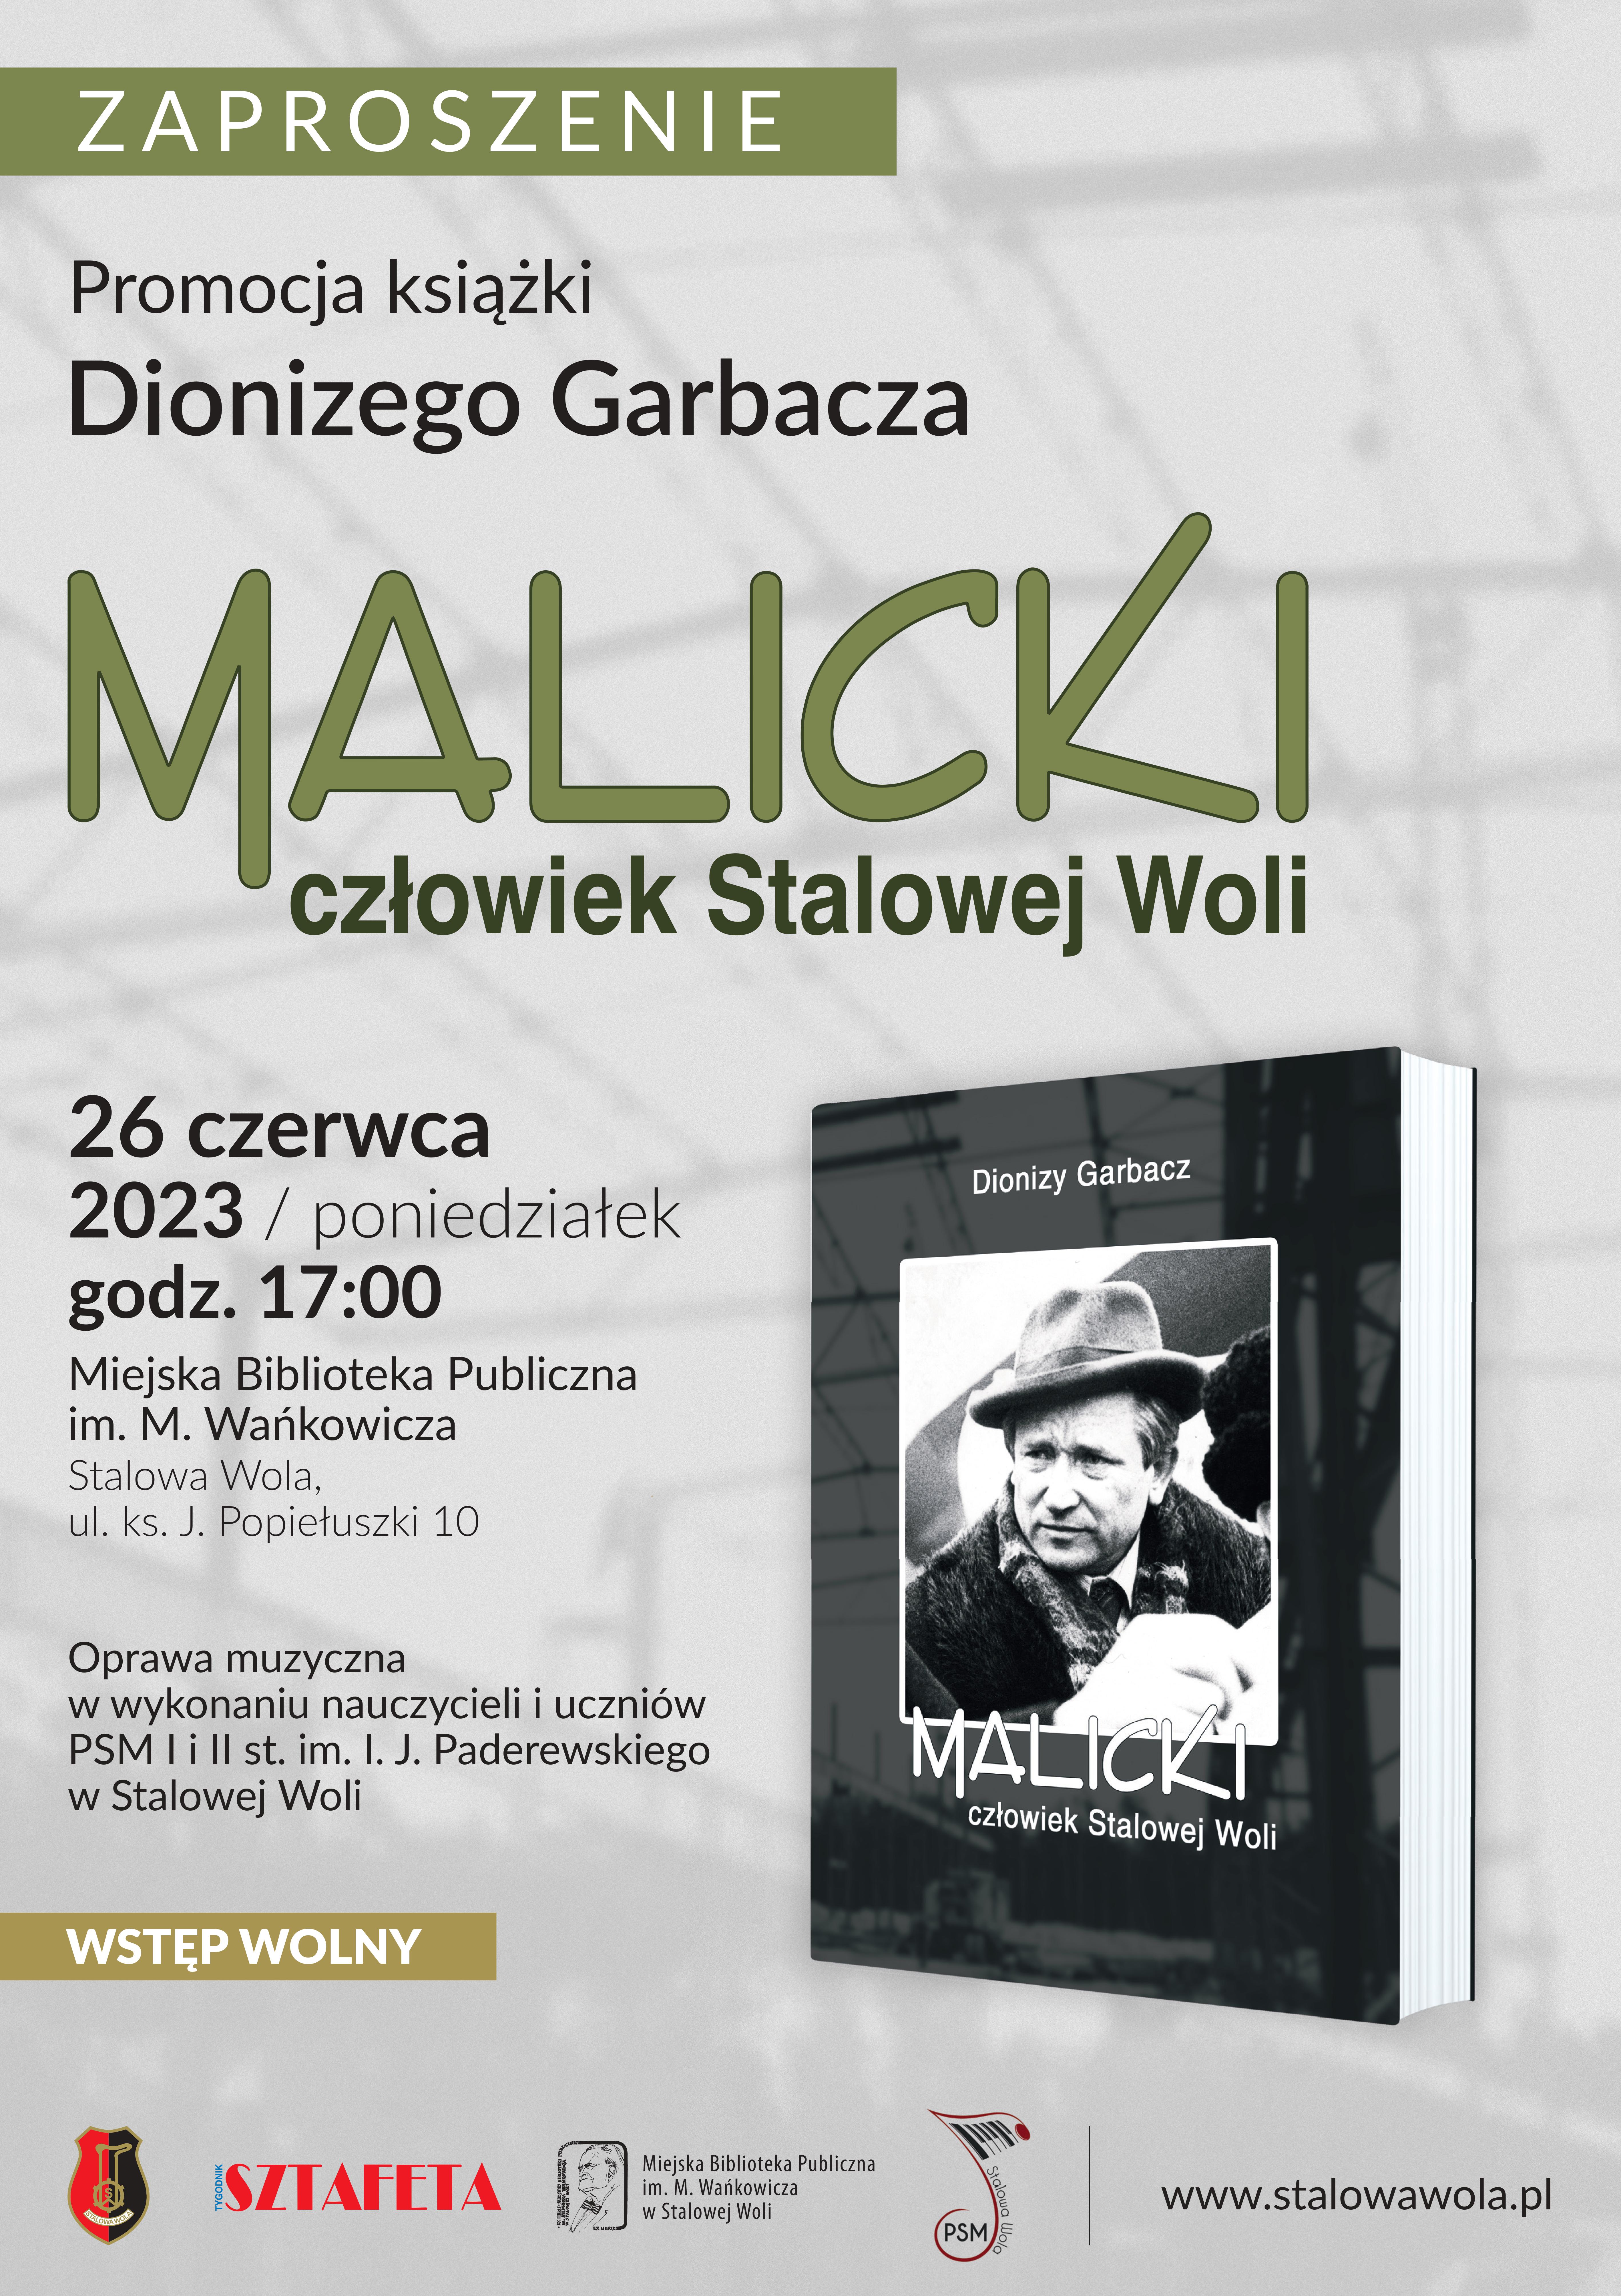 Promocja książki Dionizego Garbacza - „Malicki człowiek Stalowej Woli”